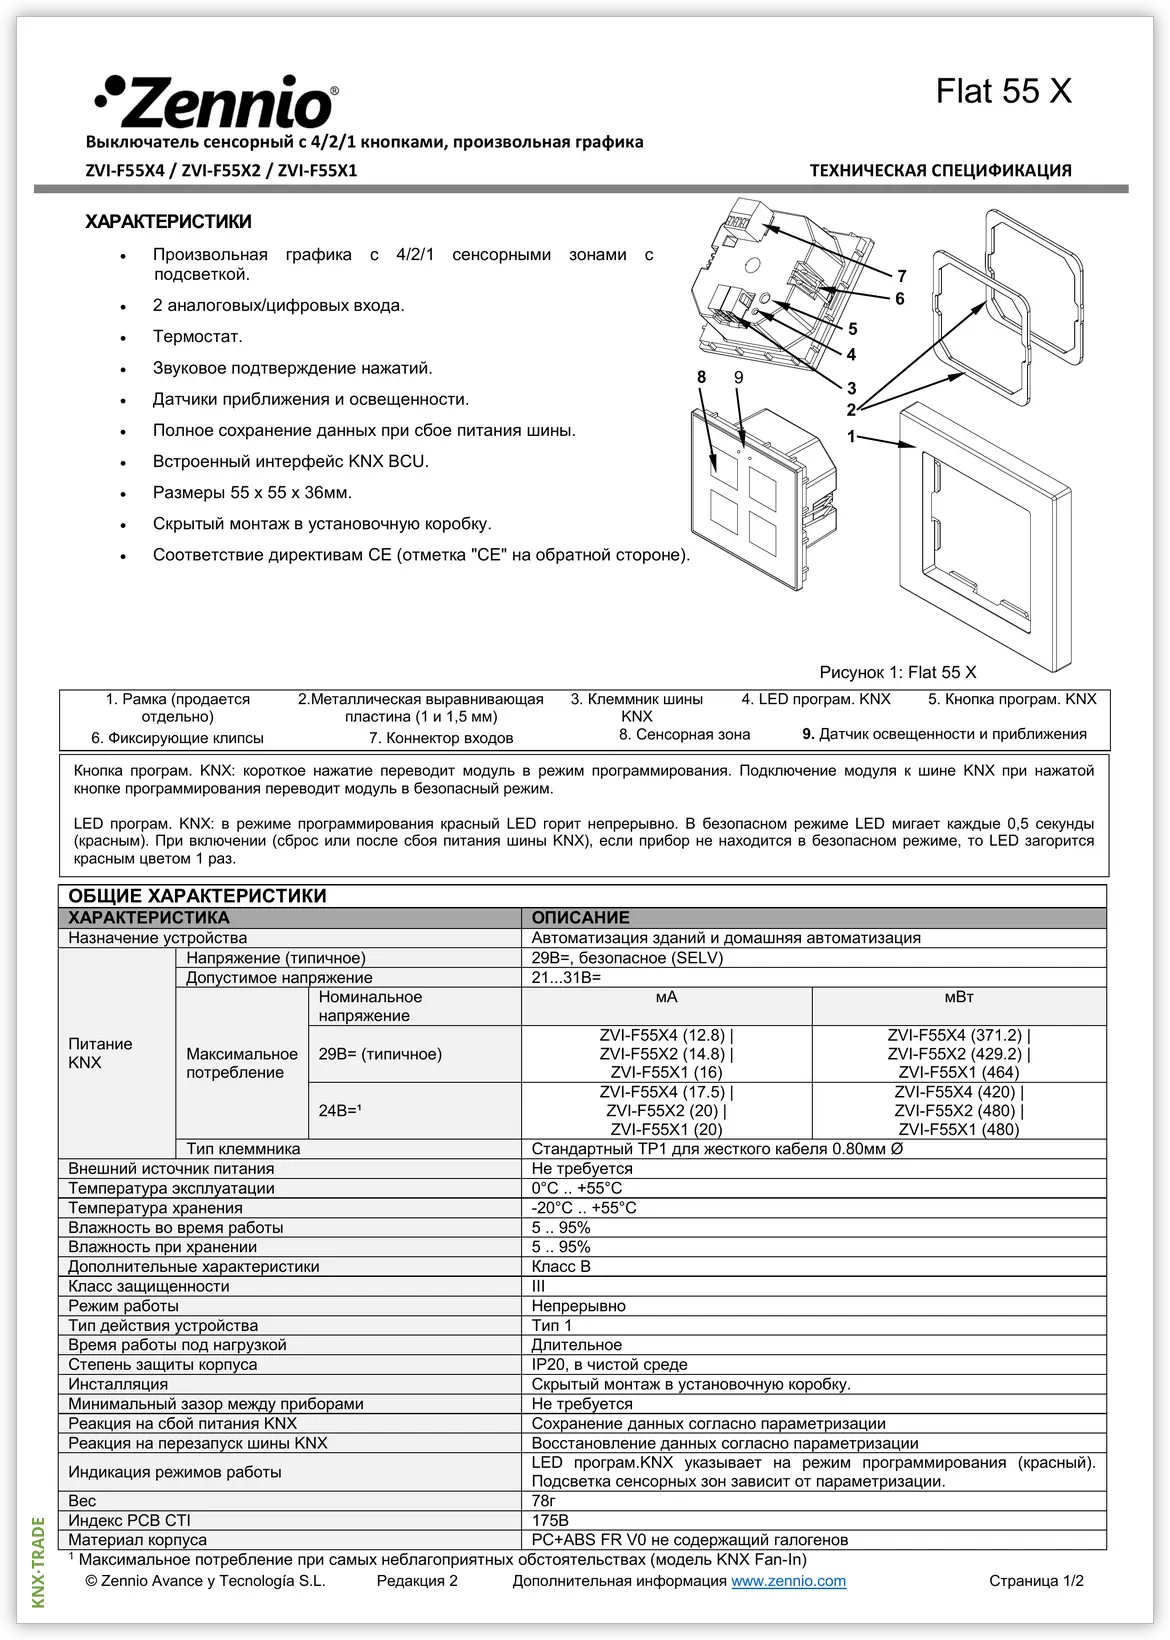 Datasheet (1) Zennio [ZVI-F55] Flat 55 / Выключатель сенсорный KNX, с подсветкой пиктограмм, 55x55мм